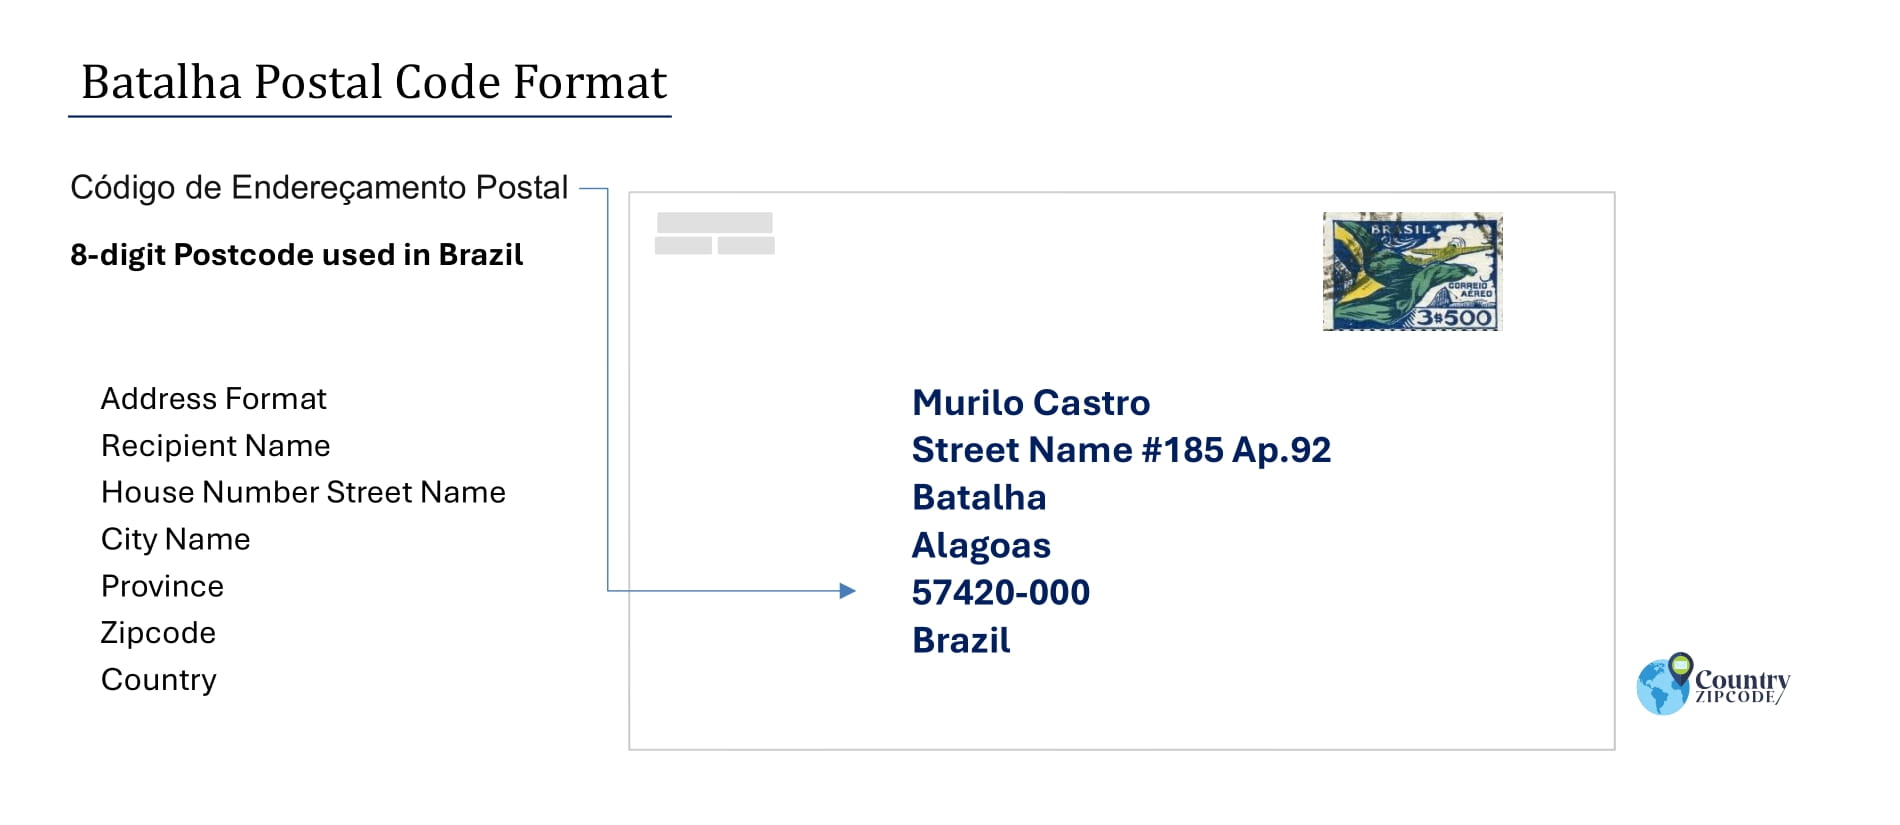 Example of Codigo de Enderecamento Postal and Address format of Batalha Alagoas Brazil